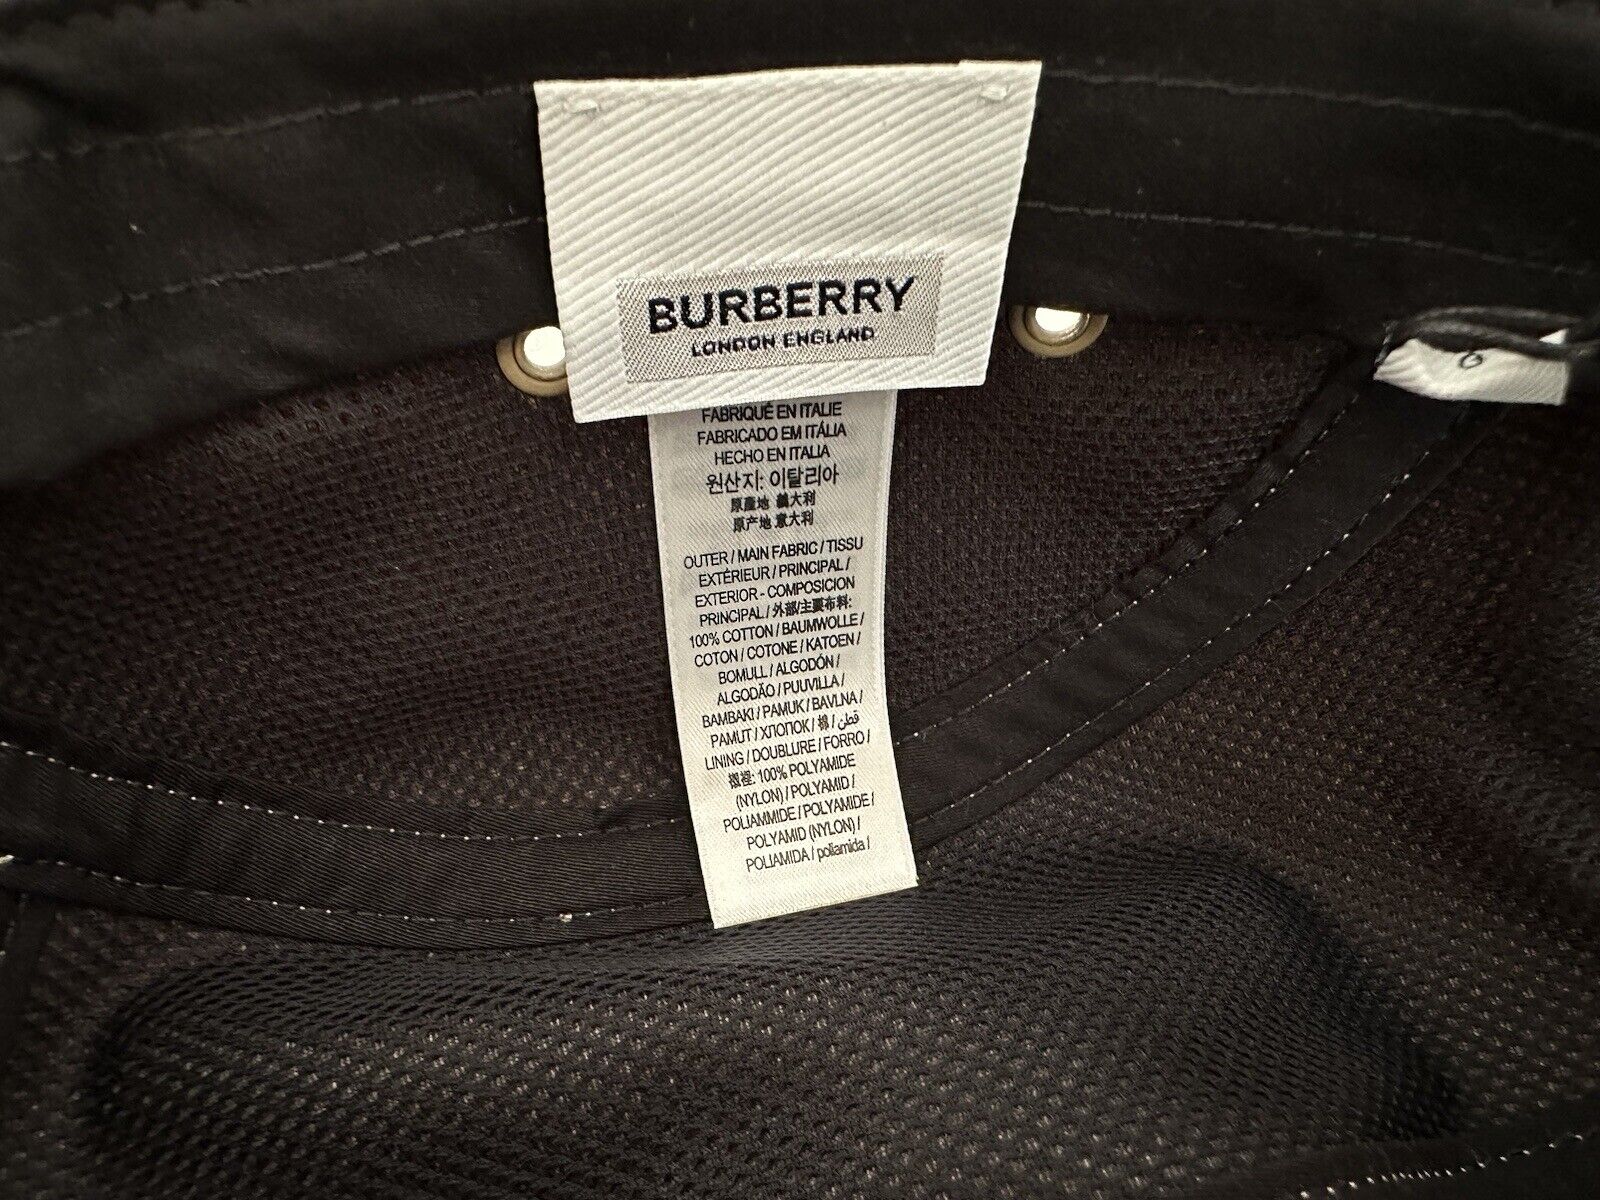 Neu mit Etikett: 320 $ Burberry London Baumwoll-Baseballkappe Khaki L (60 cm) 8030209 Italien 